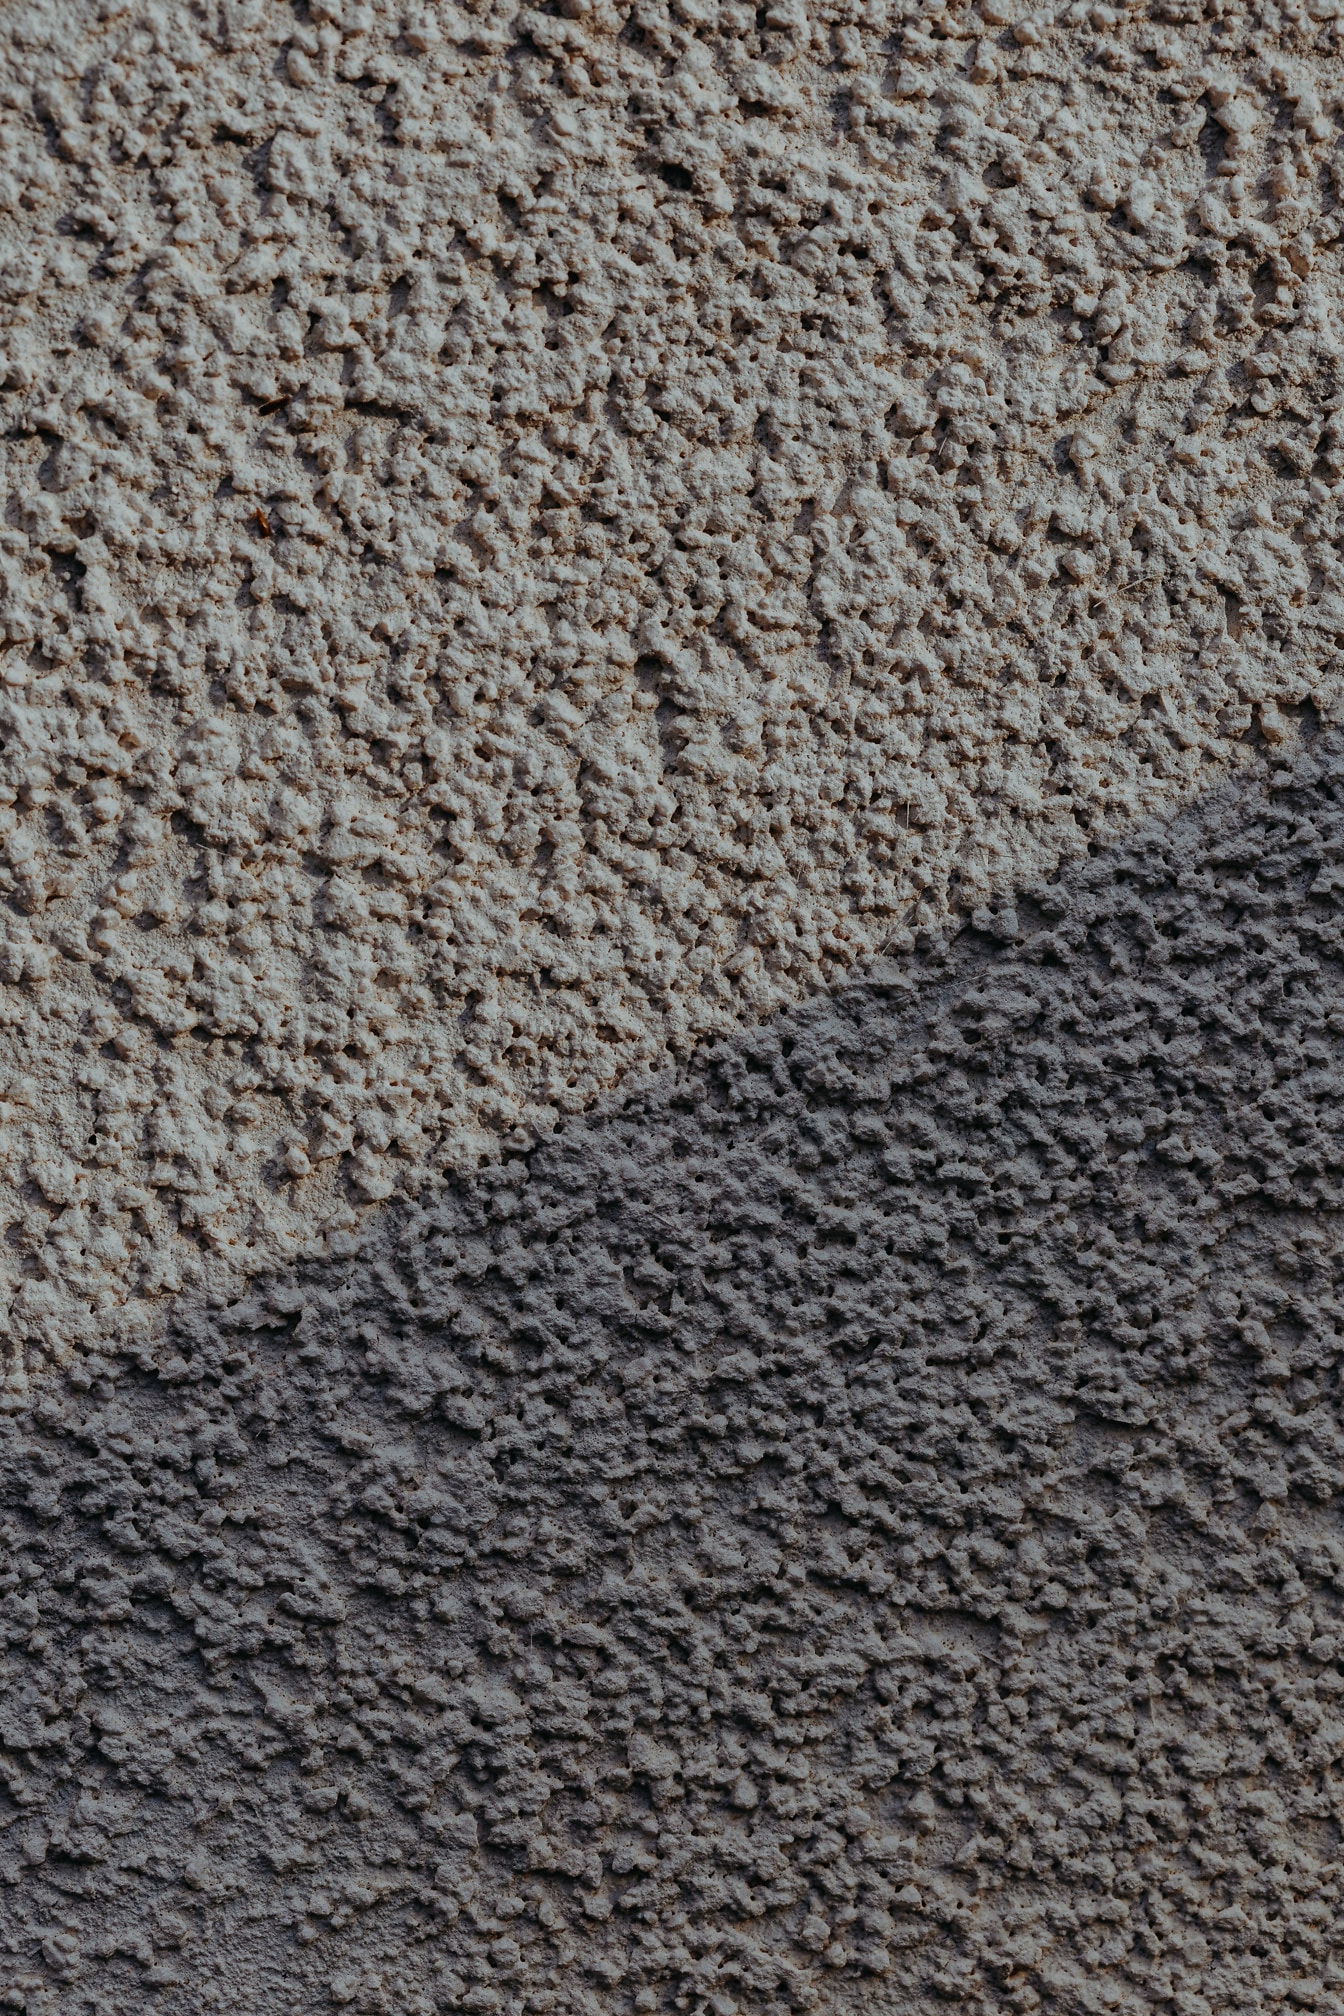 거친 회색을 띤 시멘트가 있는 벽면의 질감